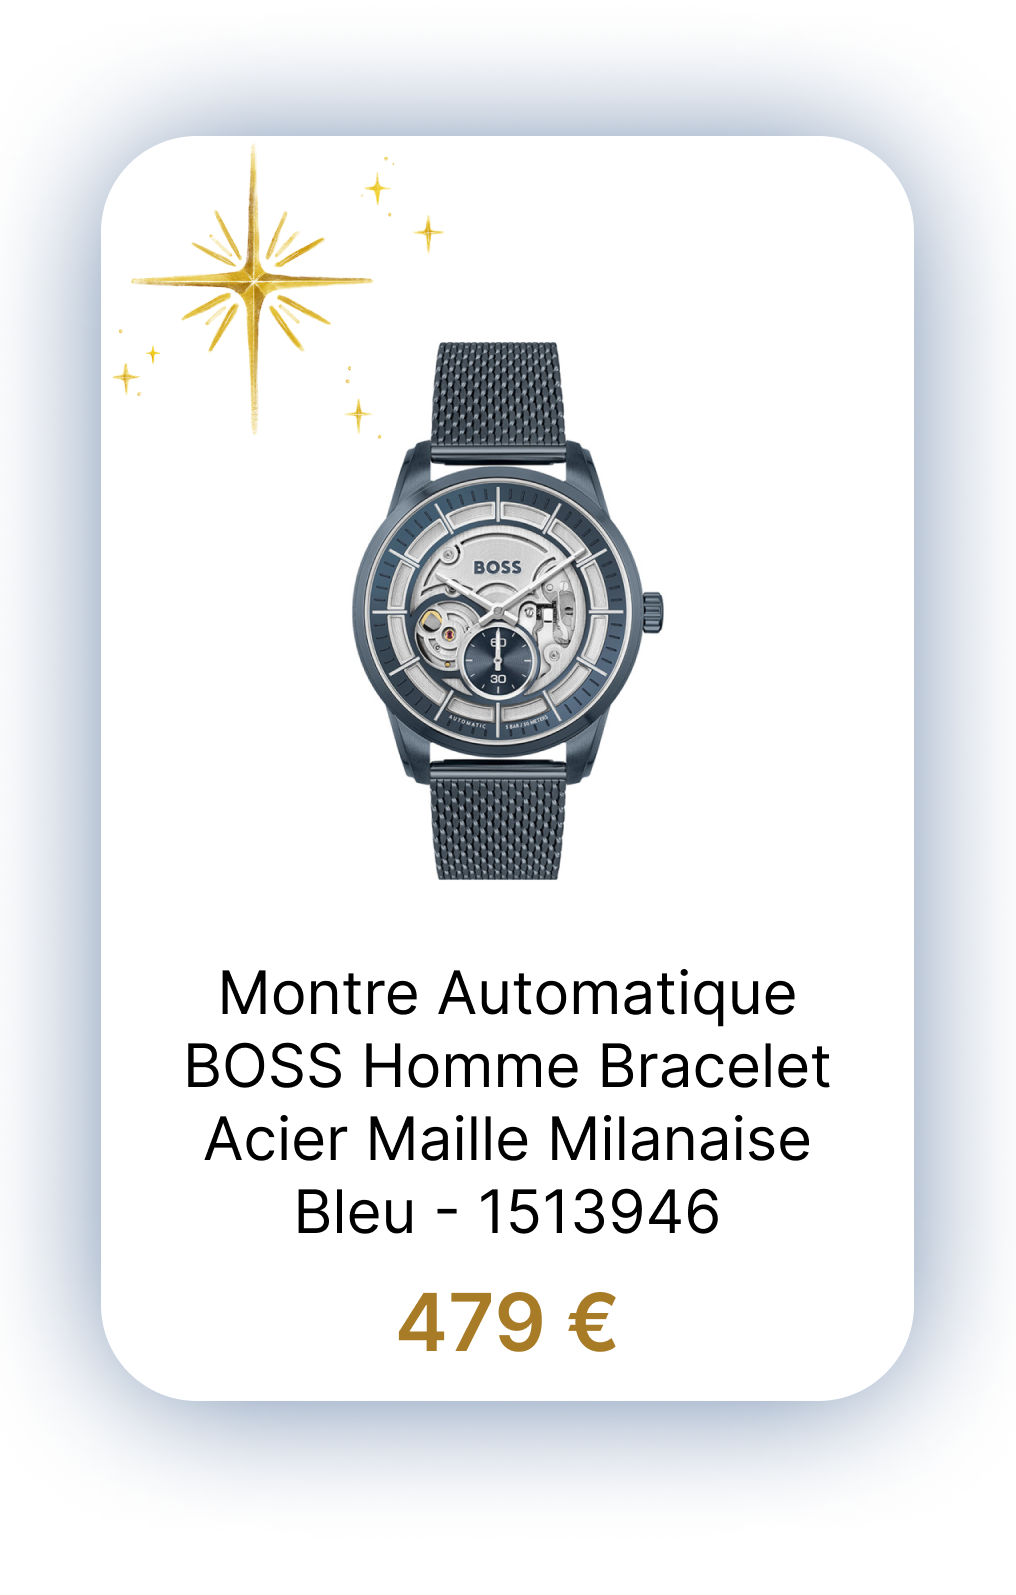 Montre Automatique SPORT LUX SOPHIO AUTO - BOSS Homme Bracelet Acier Maille Milanaise Bleu - 1513946.png